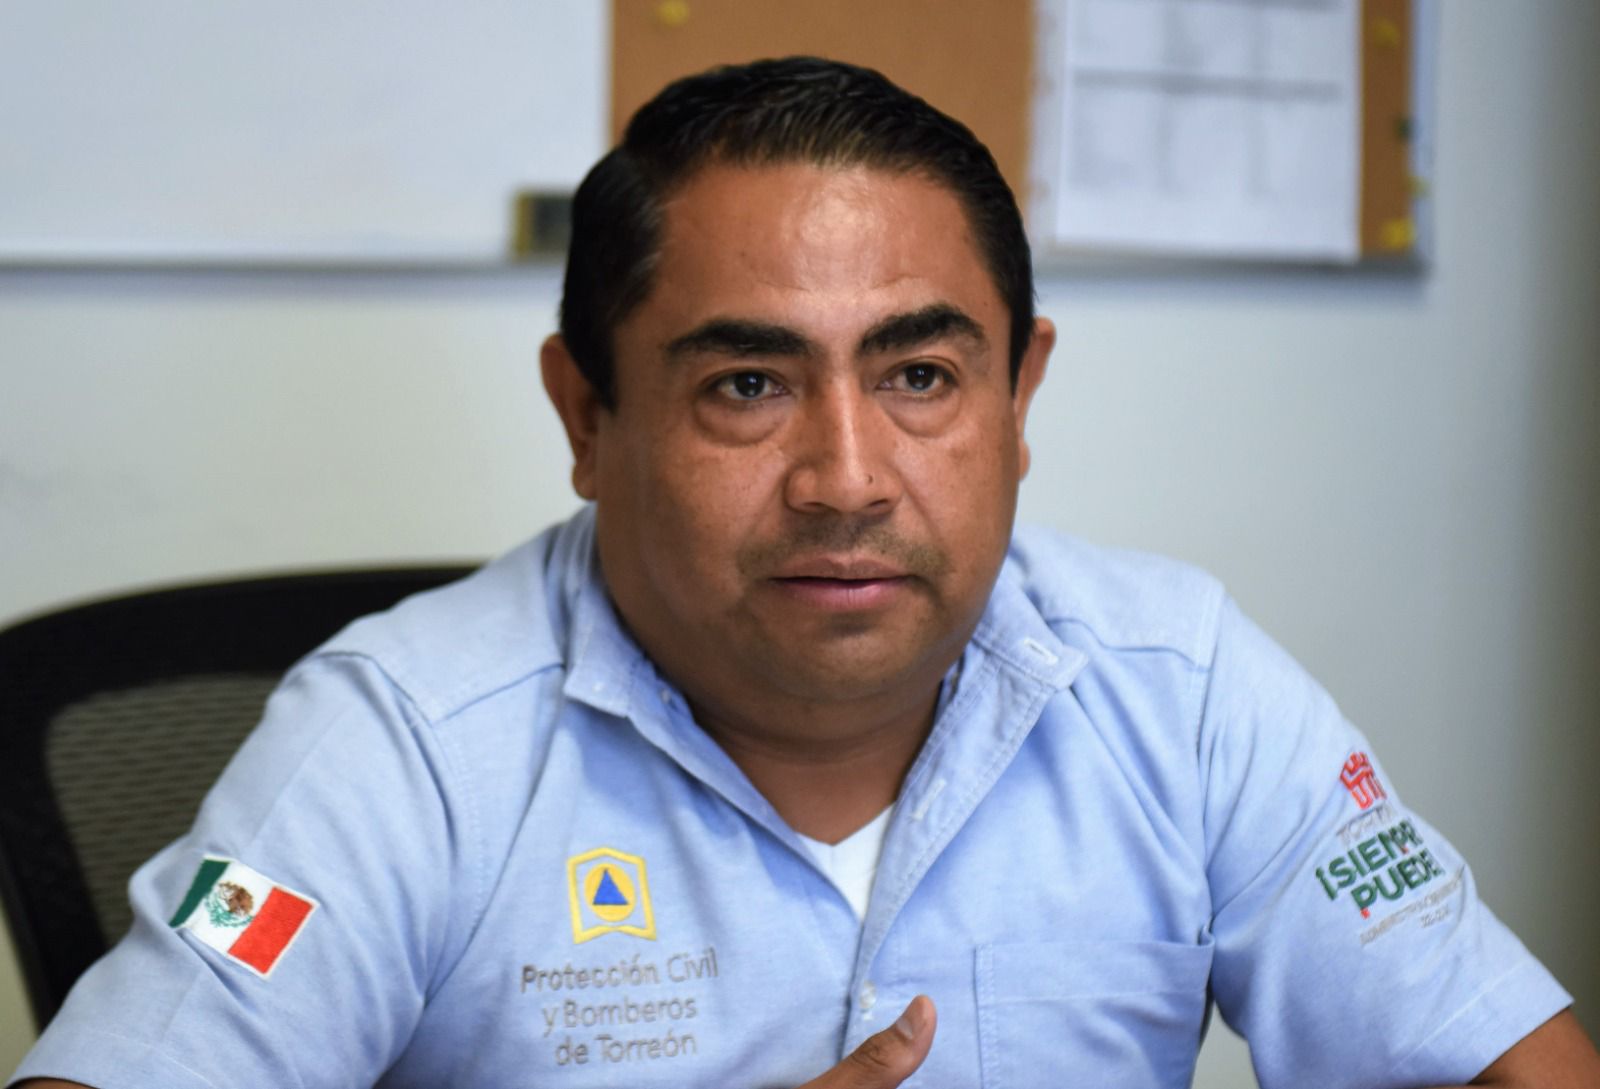 Protección Civil y Bomberos de Torreón emite recomendaciones ante pronóstico de lluvias